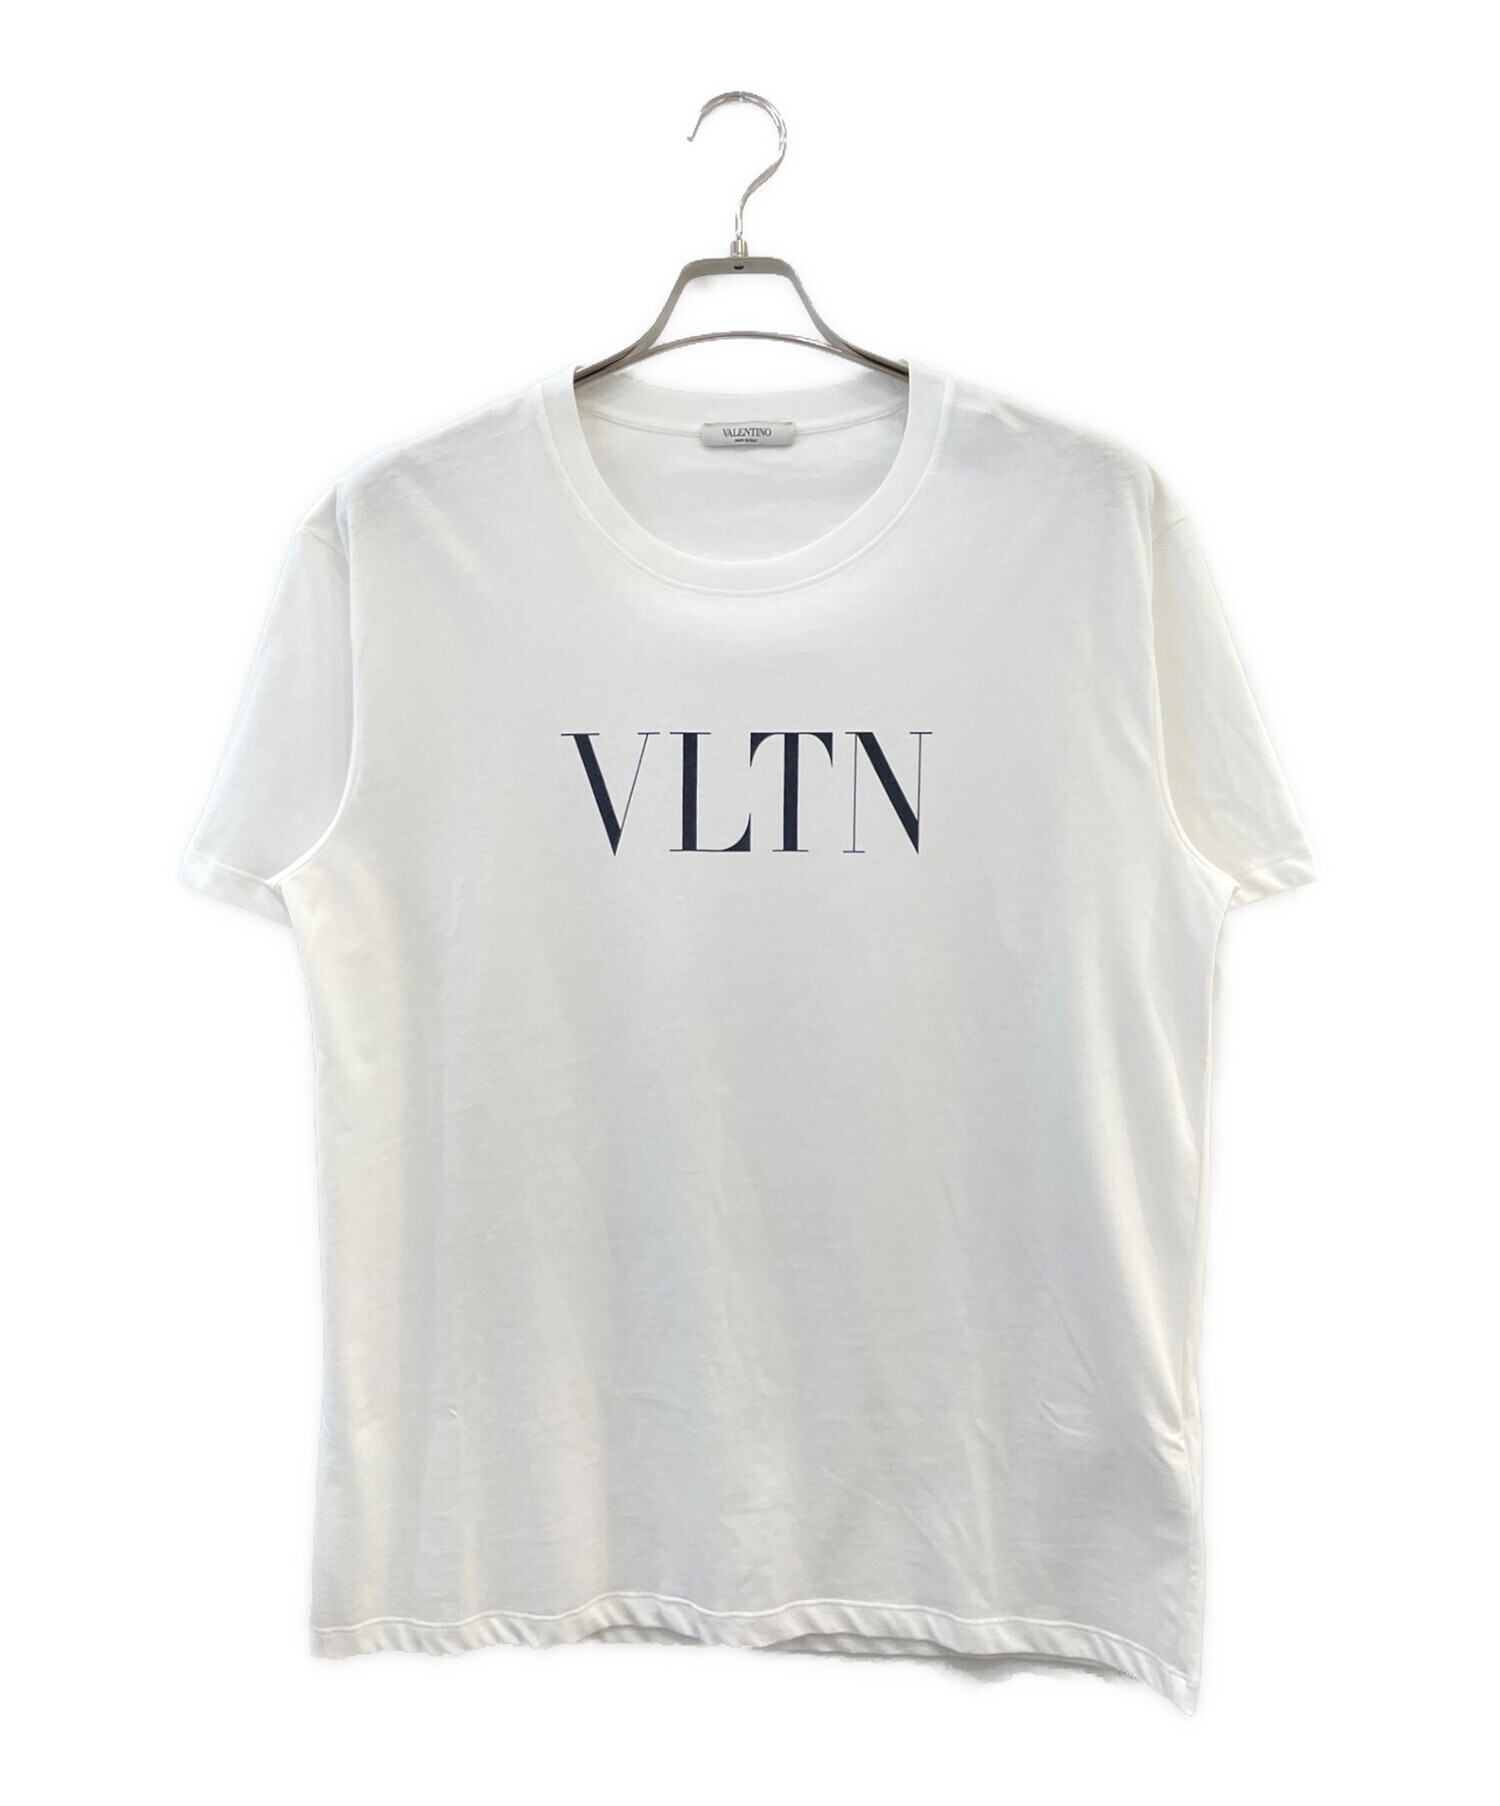 中古・古着通販】VALENTINO (ヴァレンティノ) VLTNロゴプリントTシャツ 